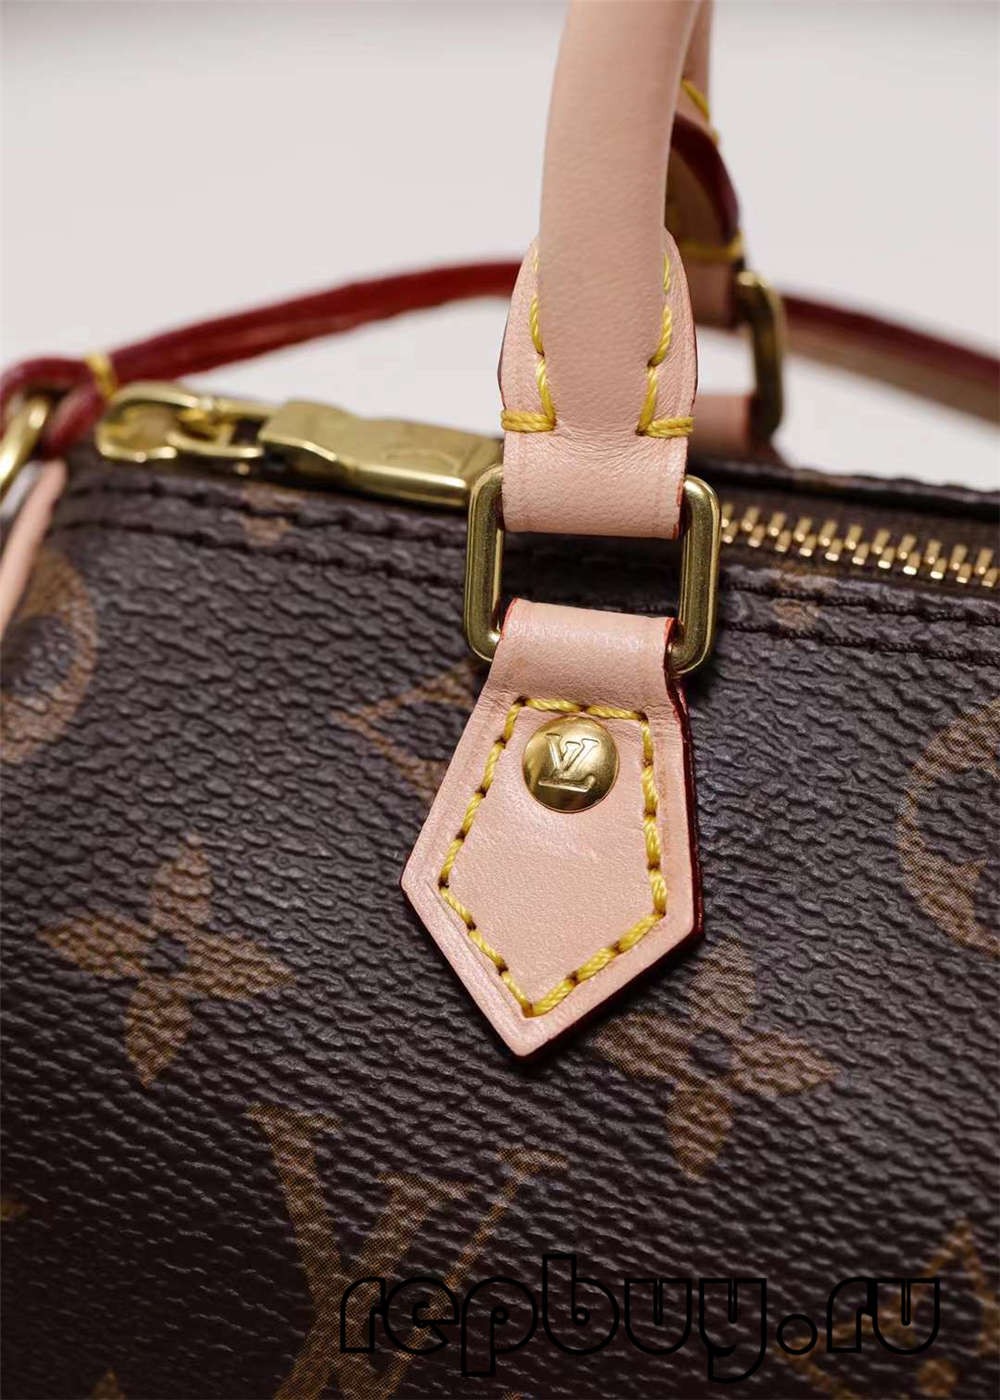 Louis Vuitton M81085 Nano Speedy 16cm çanta kopje të cilësisë së lartë (2022 Përditësuar)-Dyqani në internet i çanta Louis Vuitton Fake me cilësi më të mirë, çanta kopjuese ru